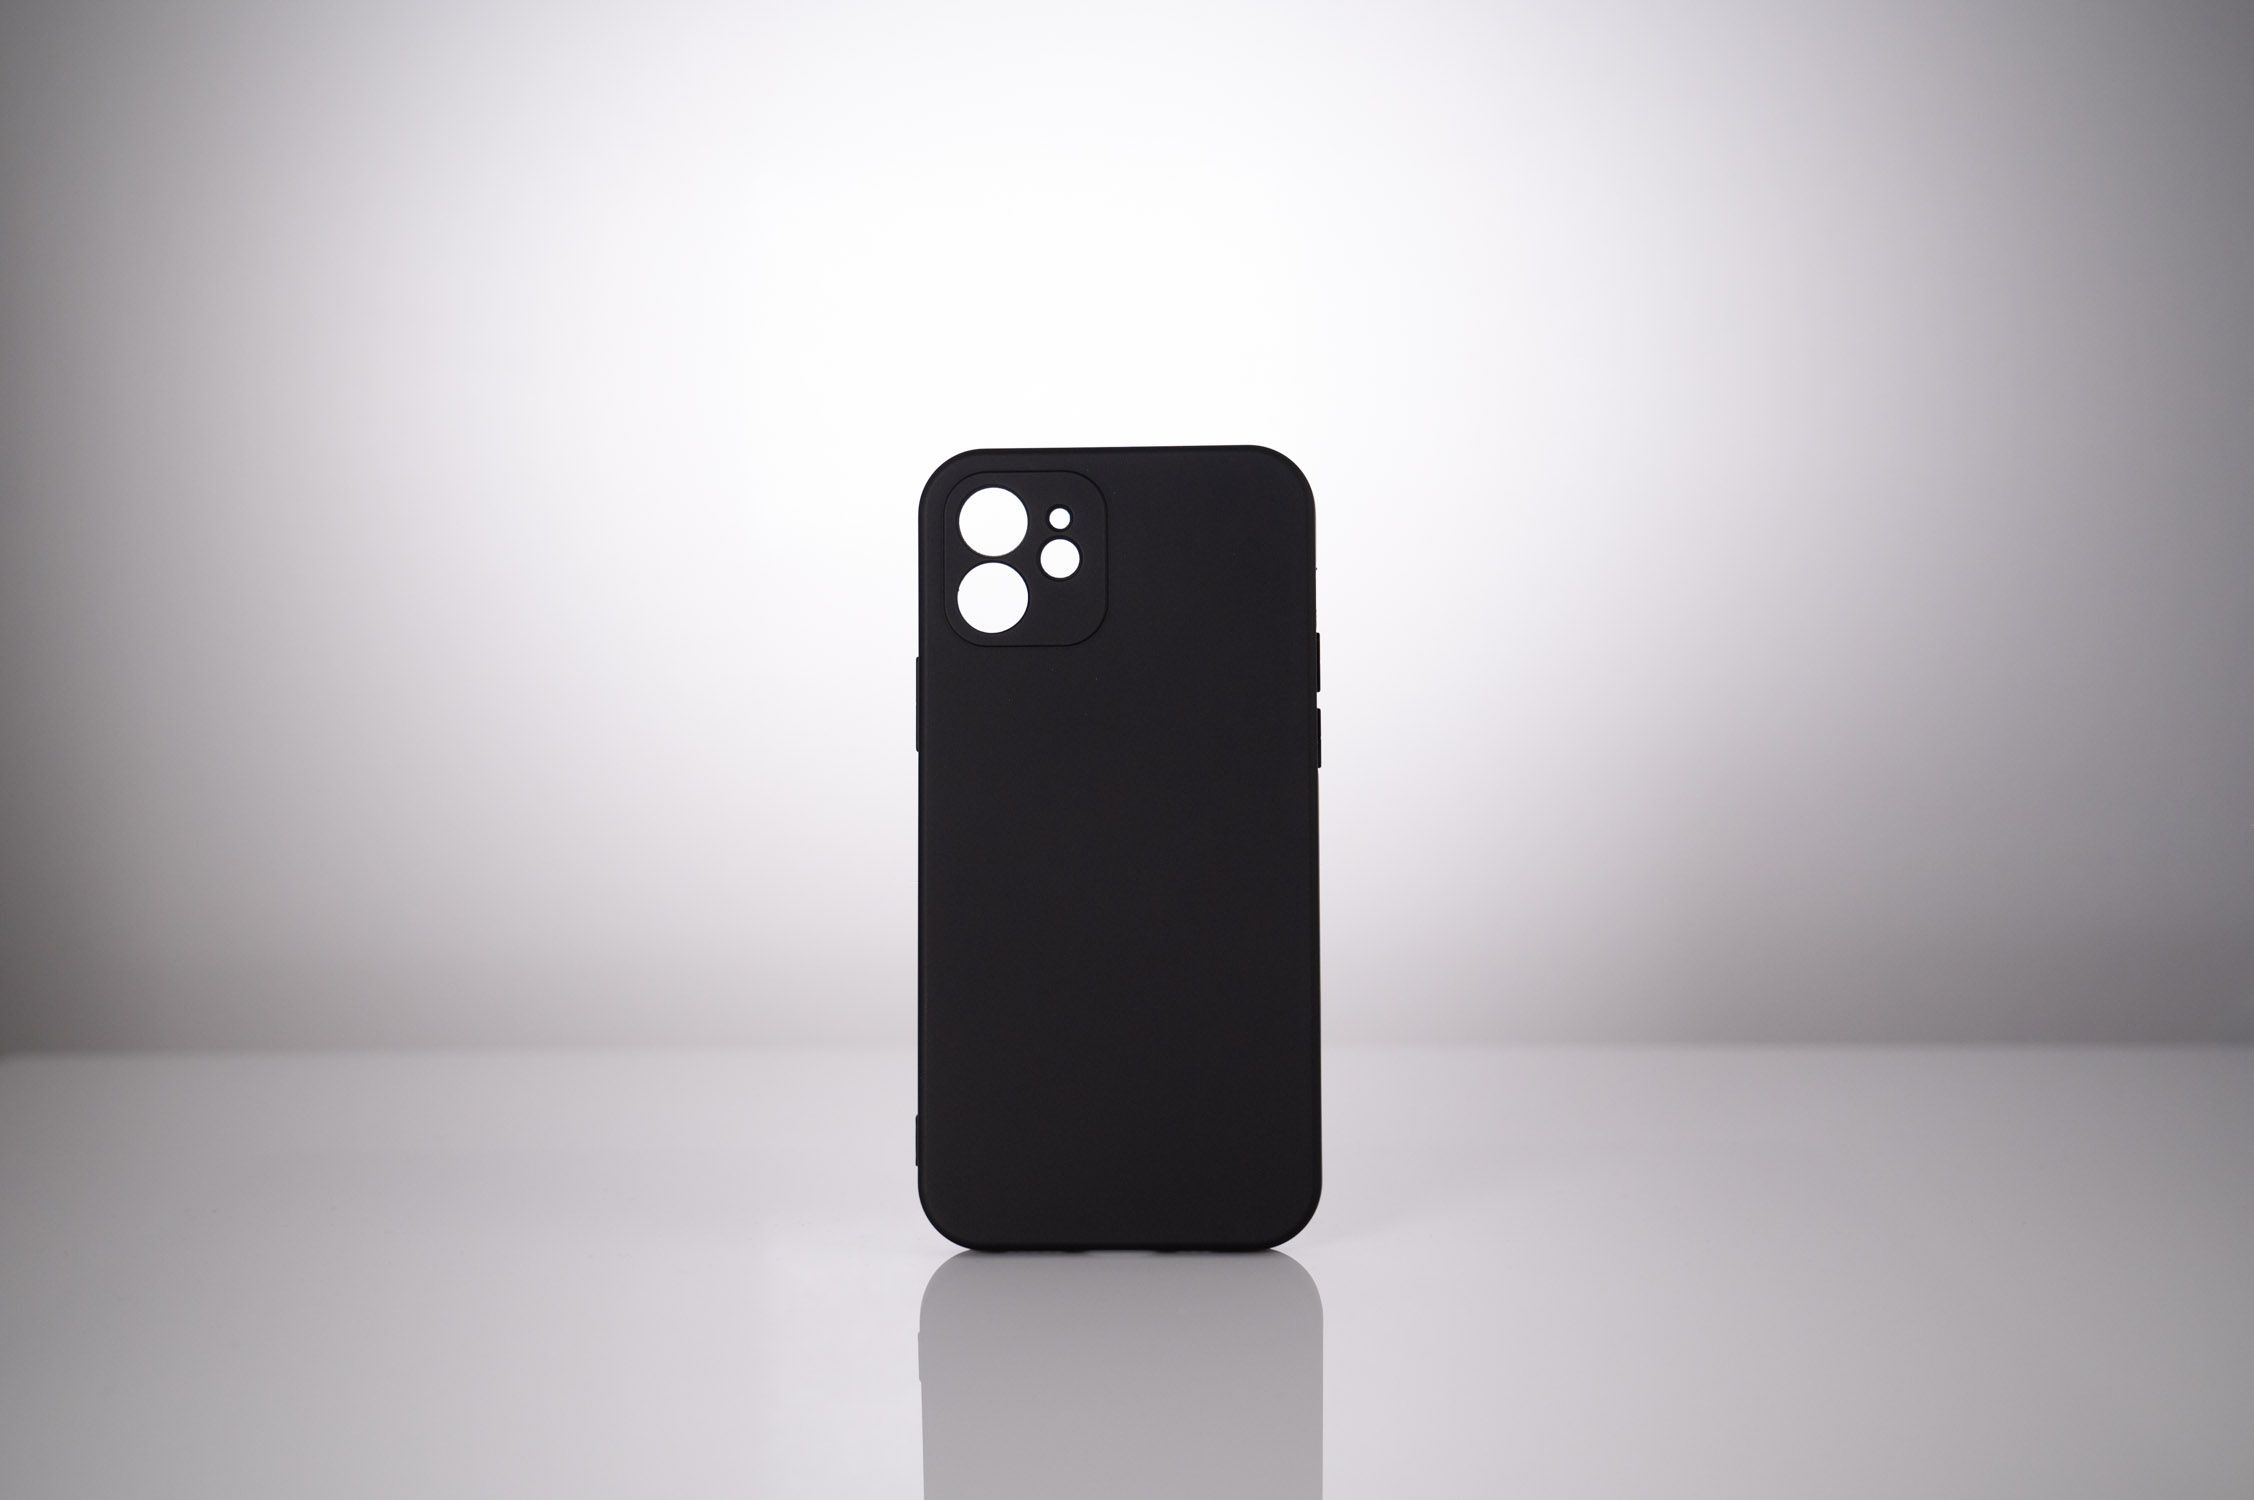 HUSA SMARTPHONE Spacer pentru Iphone 13 Pro Max, grosime 2mm, material flexibil silicon + interior cu microfibra, negru 